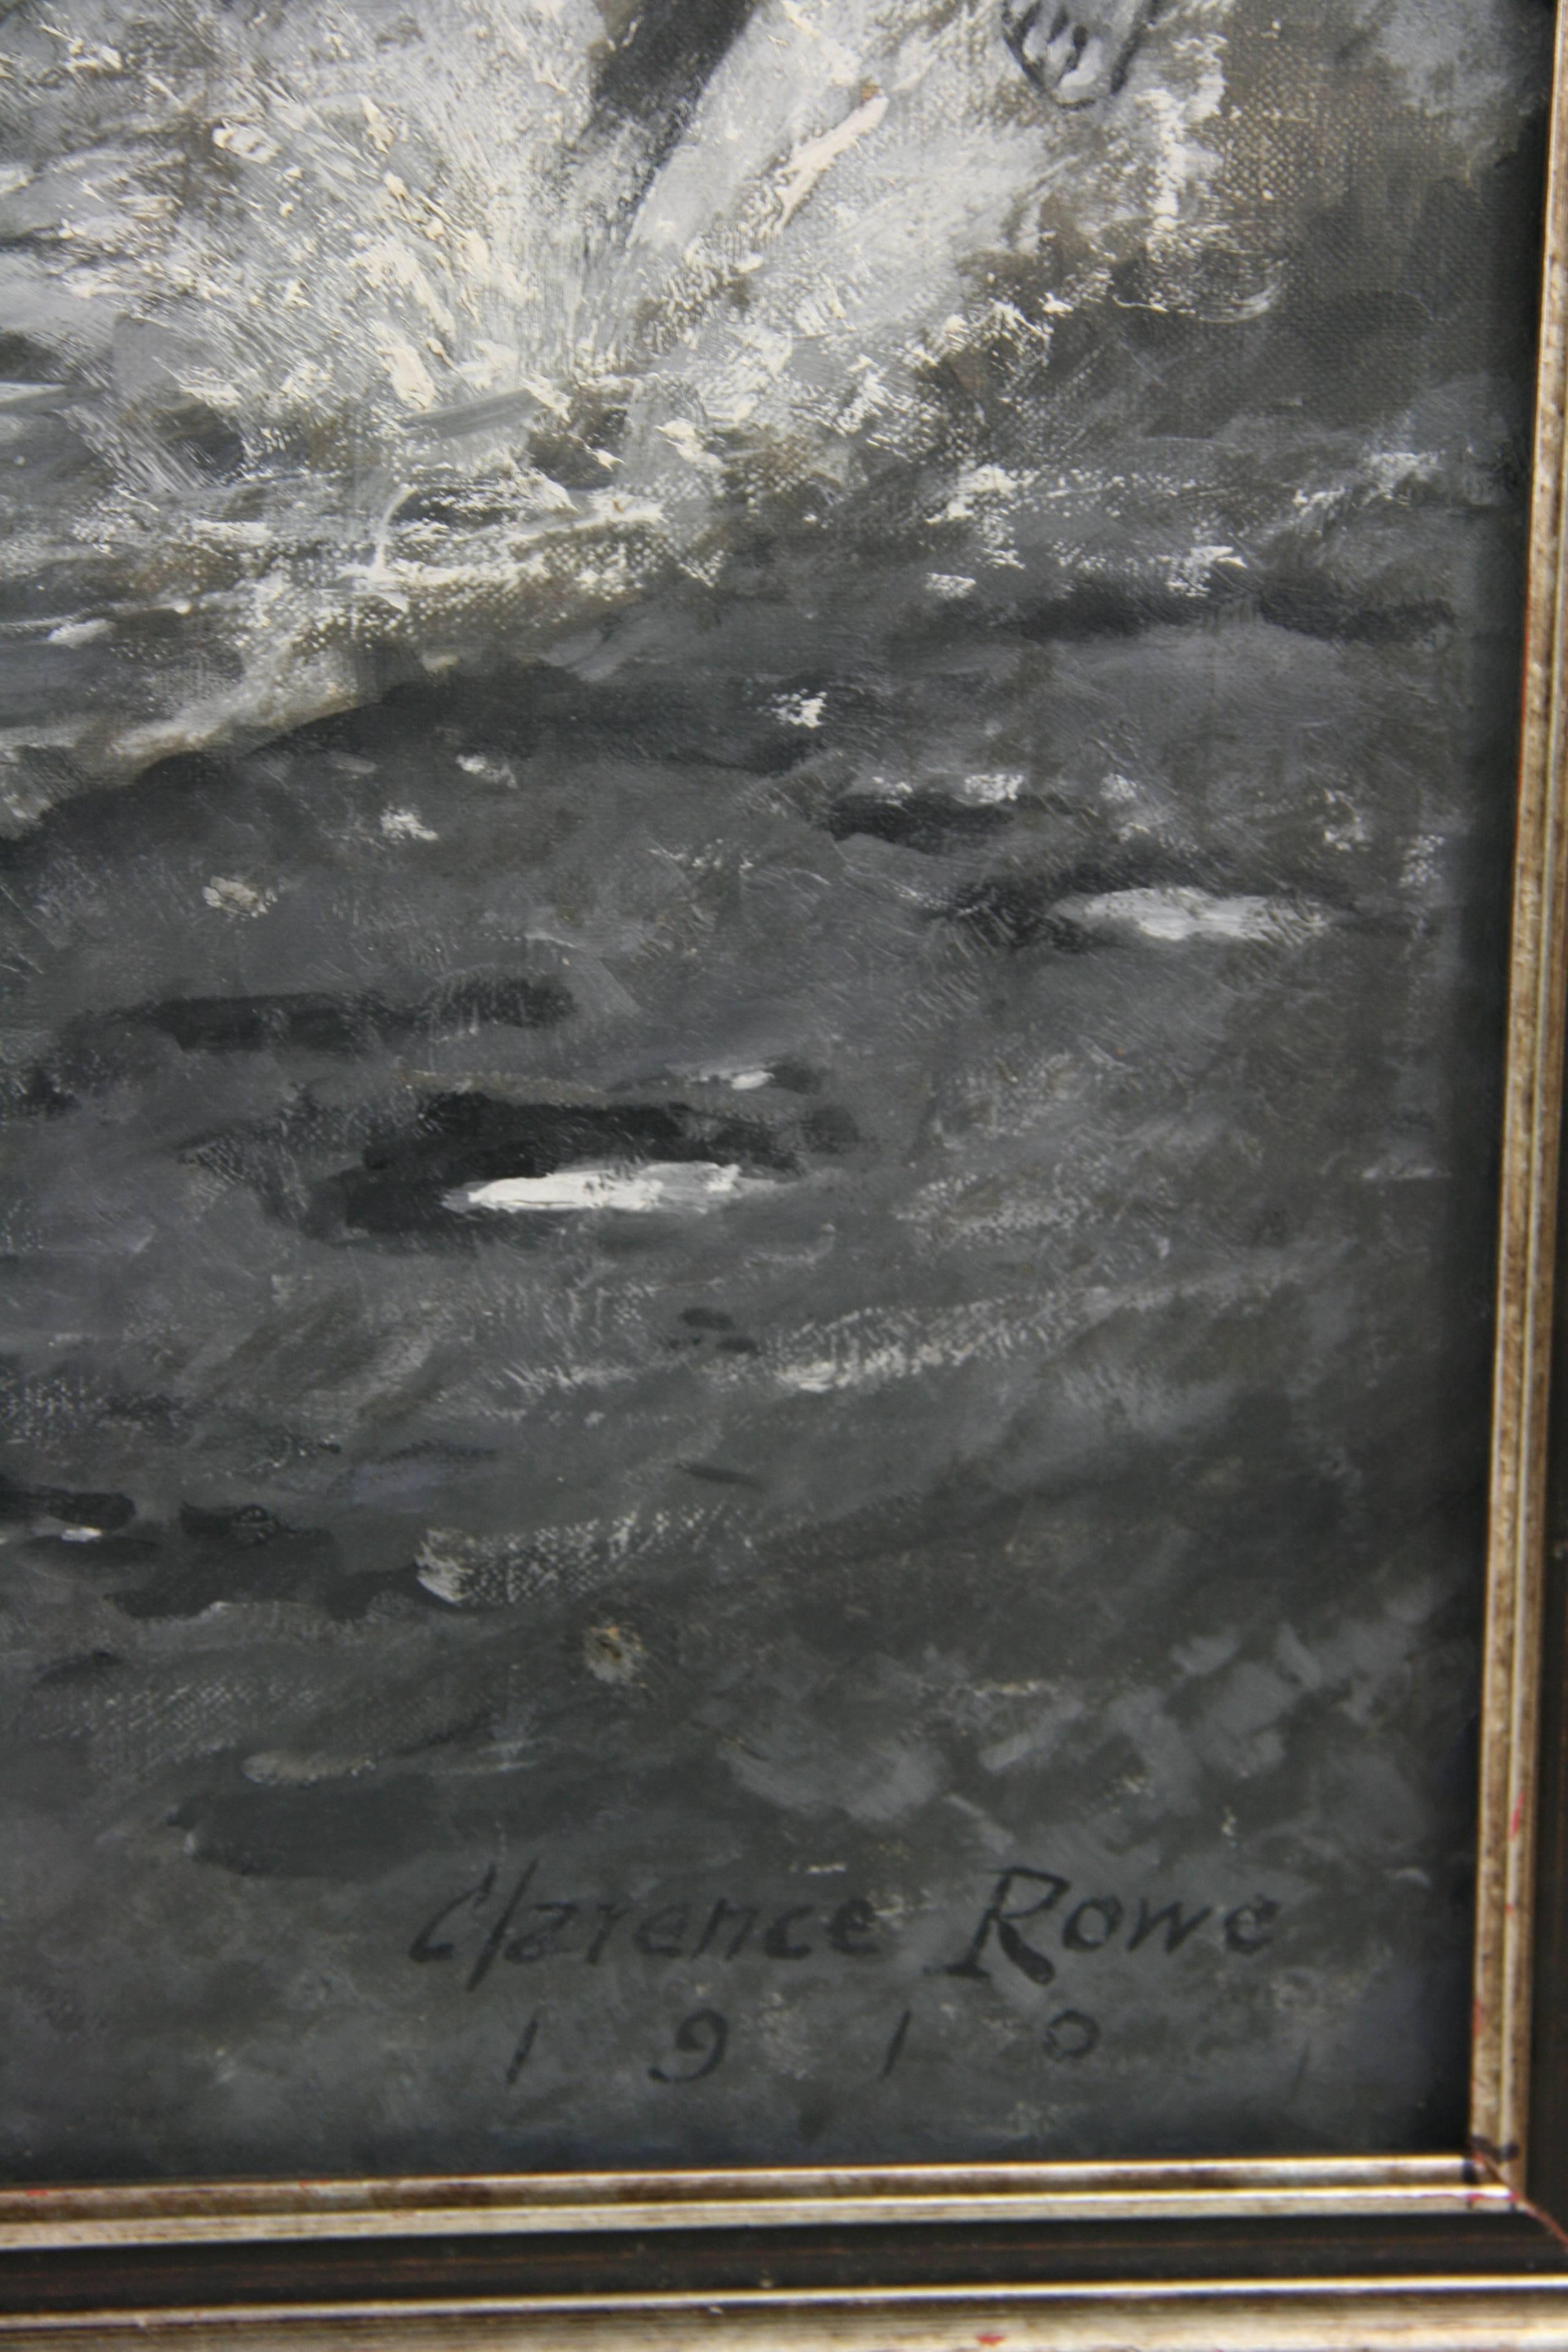 #5-2779a  River Crossing Equestrian painting, ein schwarz-weißes Ölgemälde auf Leinwand aus dem Jahr 1910, signiert unten rechts von Clarence Rowe 1910.
Alter Verschleiß
Ungerahmt